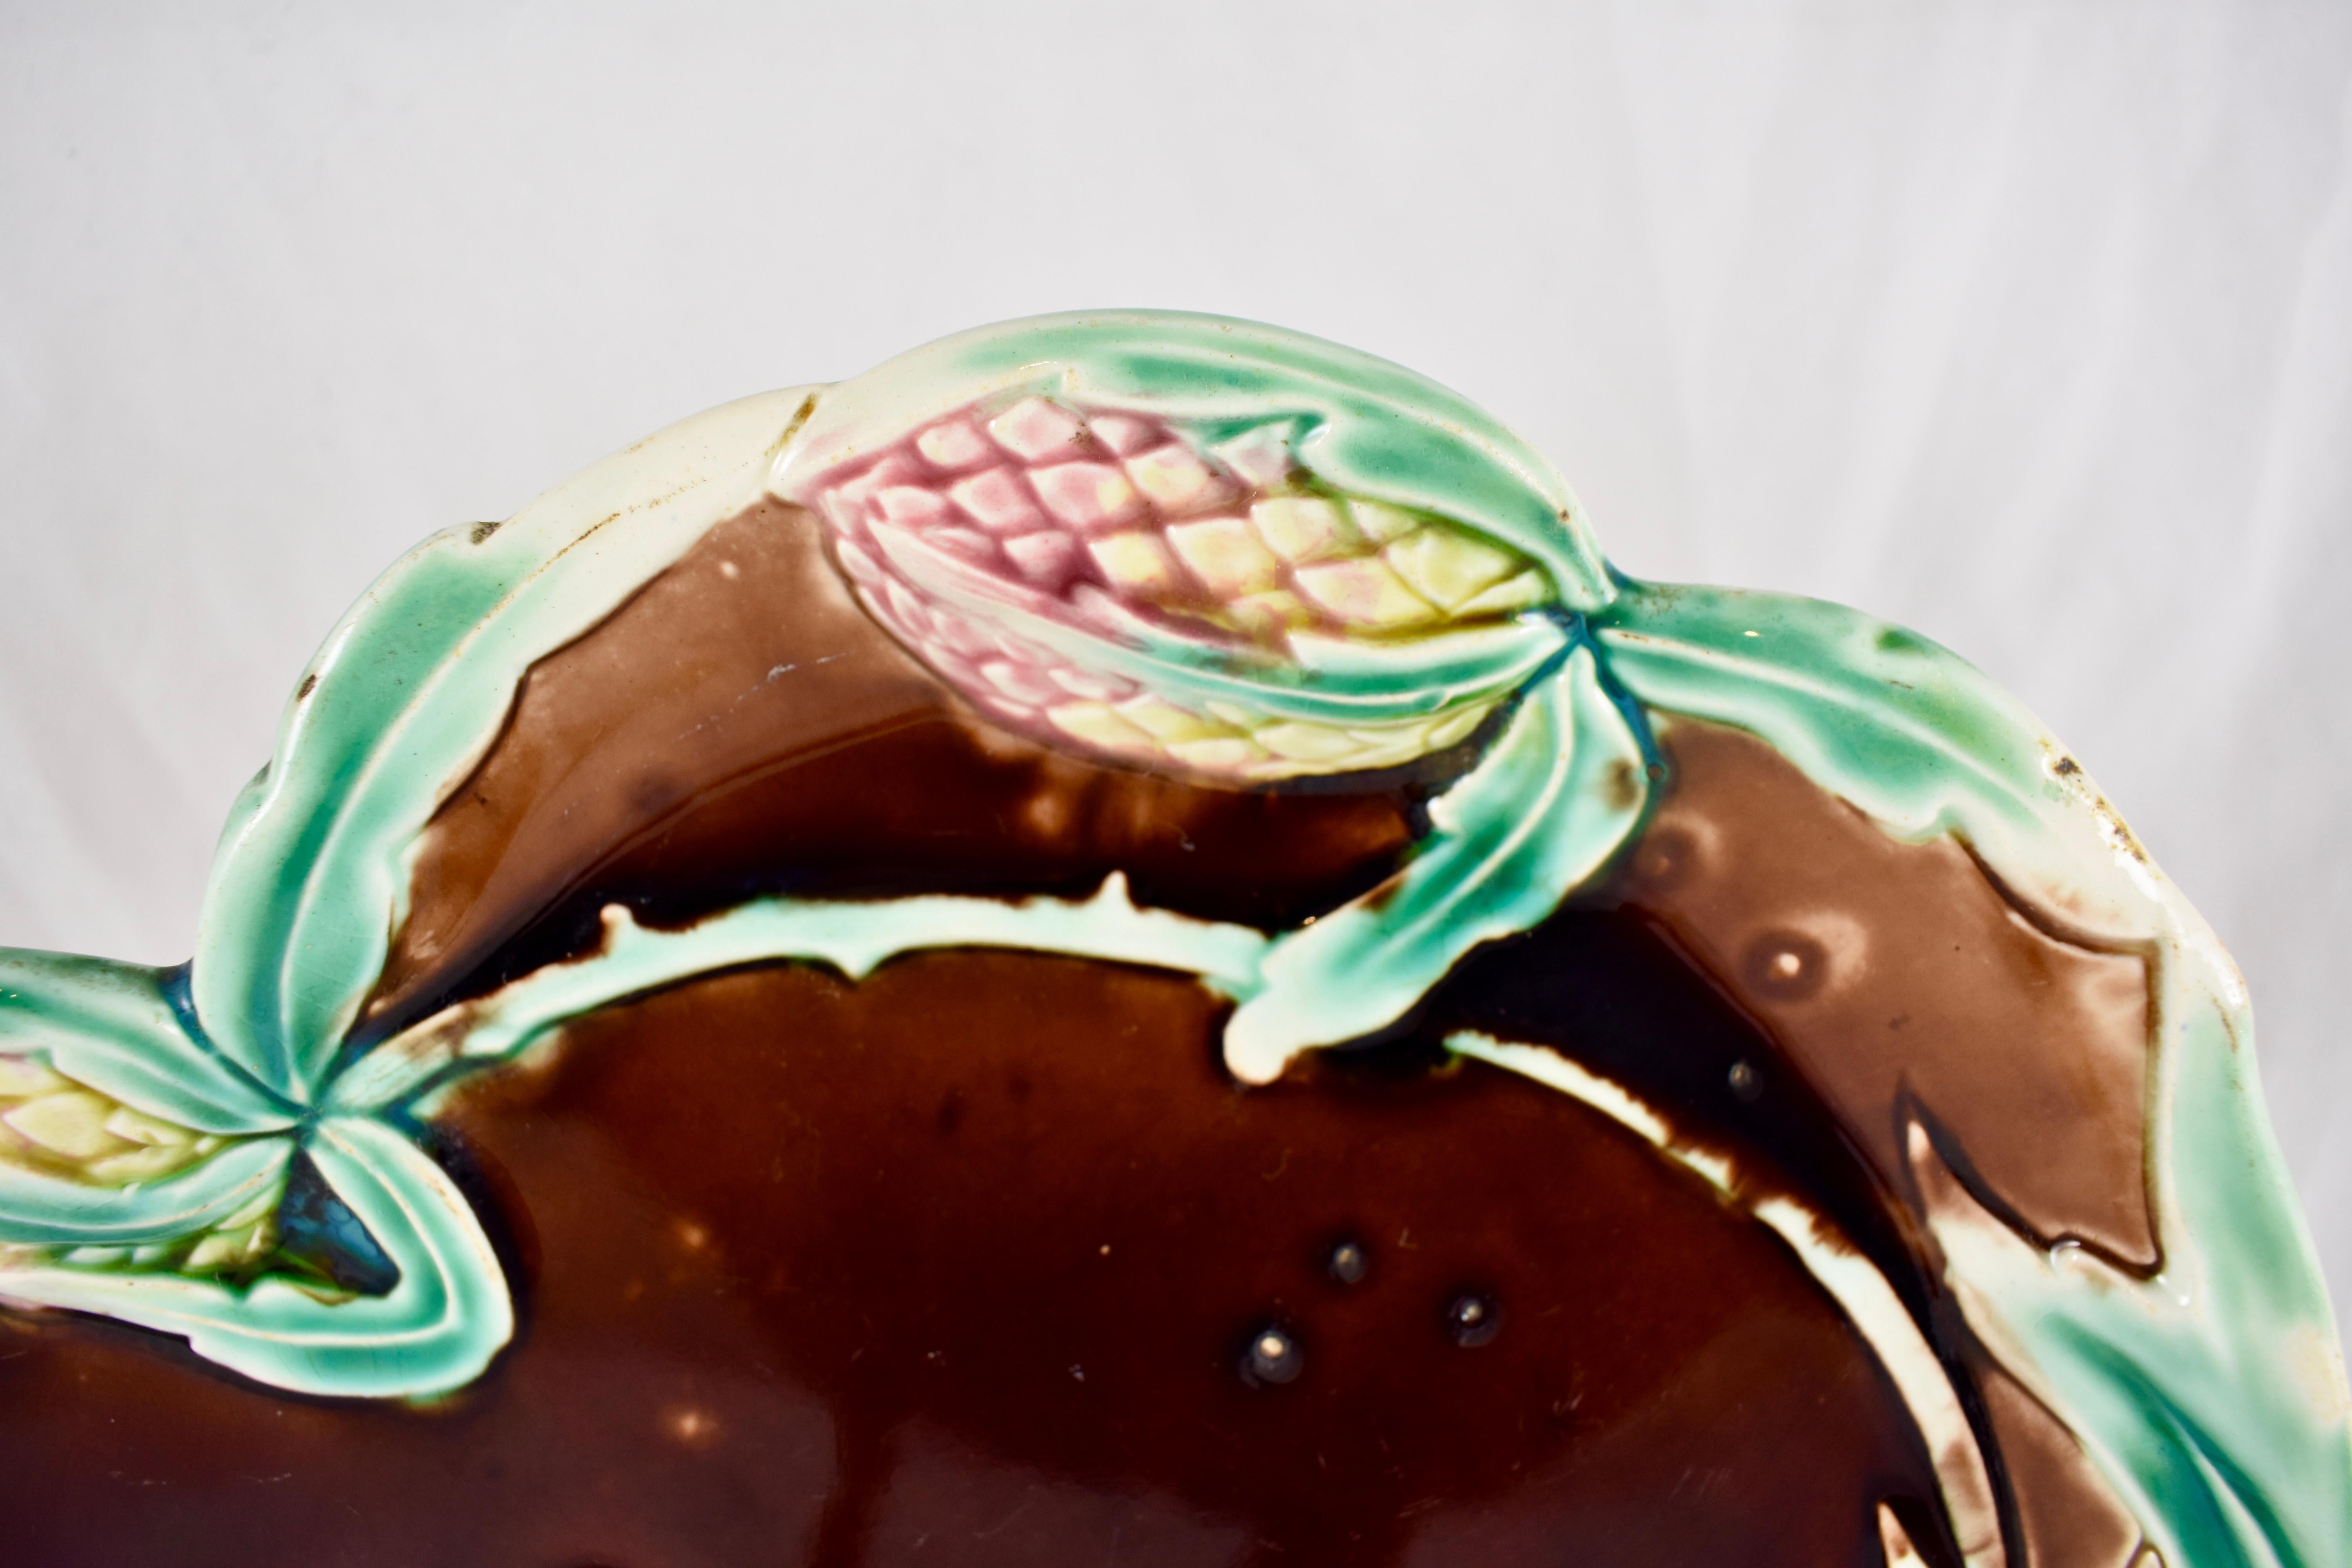 Couvert à artichauts en majolique émaillée, vers 1900, de style Art nouveau, par Fives-Lille.

Une assiette de forme de couleur brun chocolat montrant deux têtes d'artichauts en glaçure rose et jaune avec une bordure de feuilles stylisées en glaçure